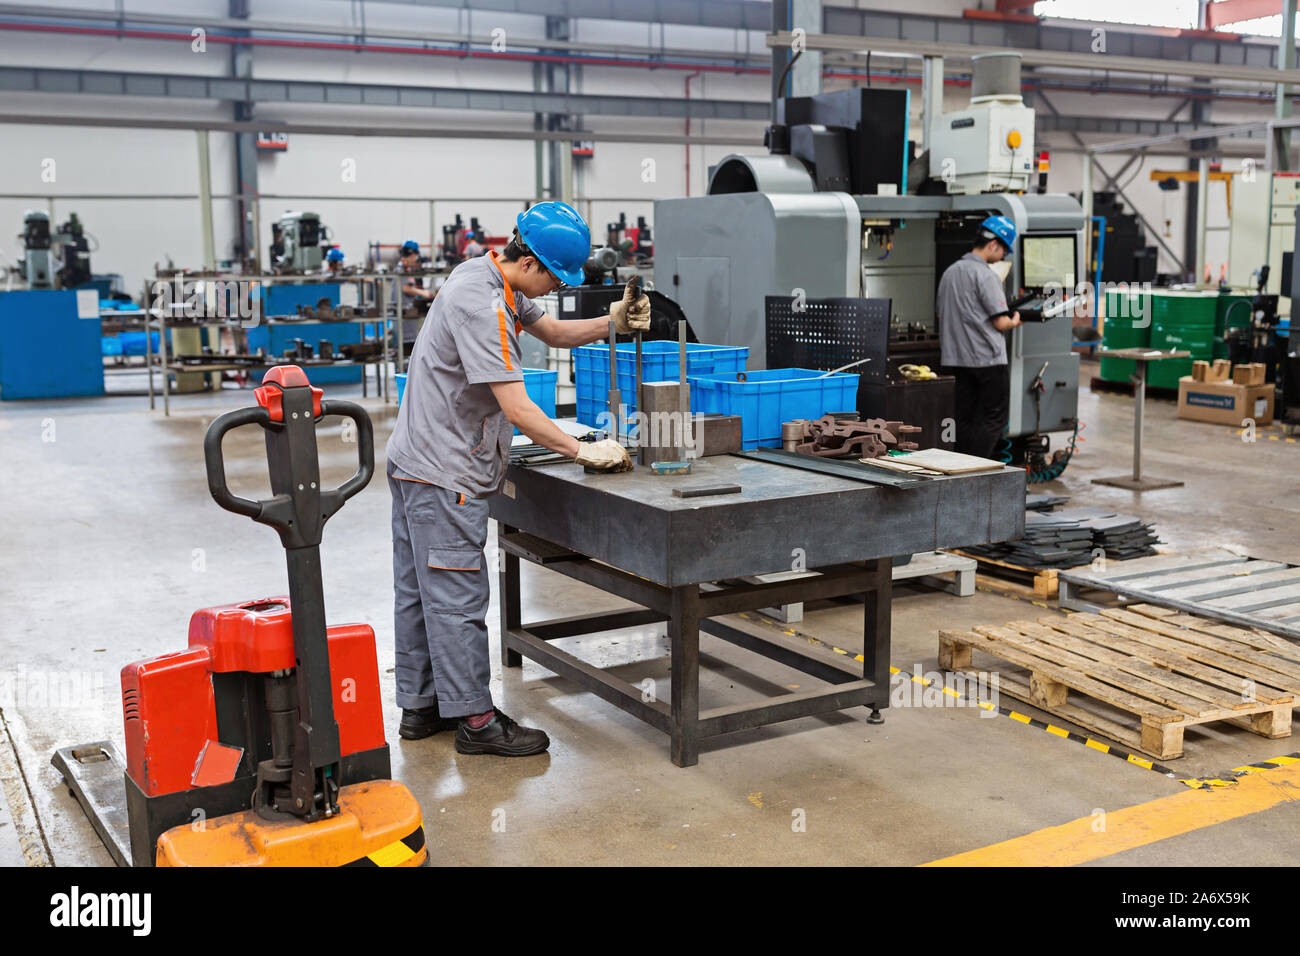 Mitarbeiter arbeiten an der Fabrik an der Maschine. Industrie, Vertrieb, Logistik Import Export, Handel, Versand, Lieferung Konzept Stockfoto